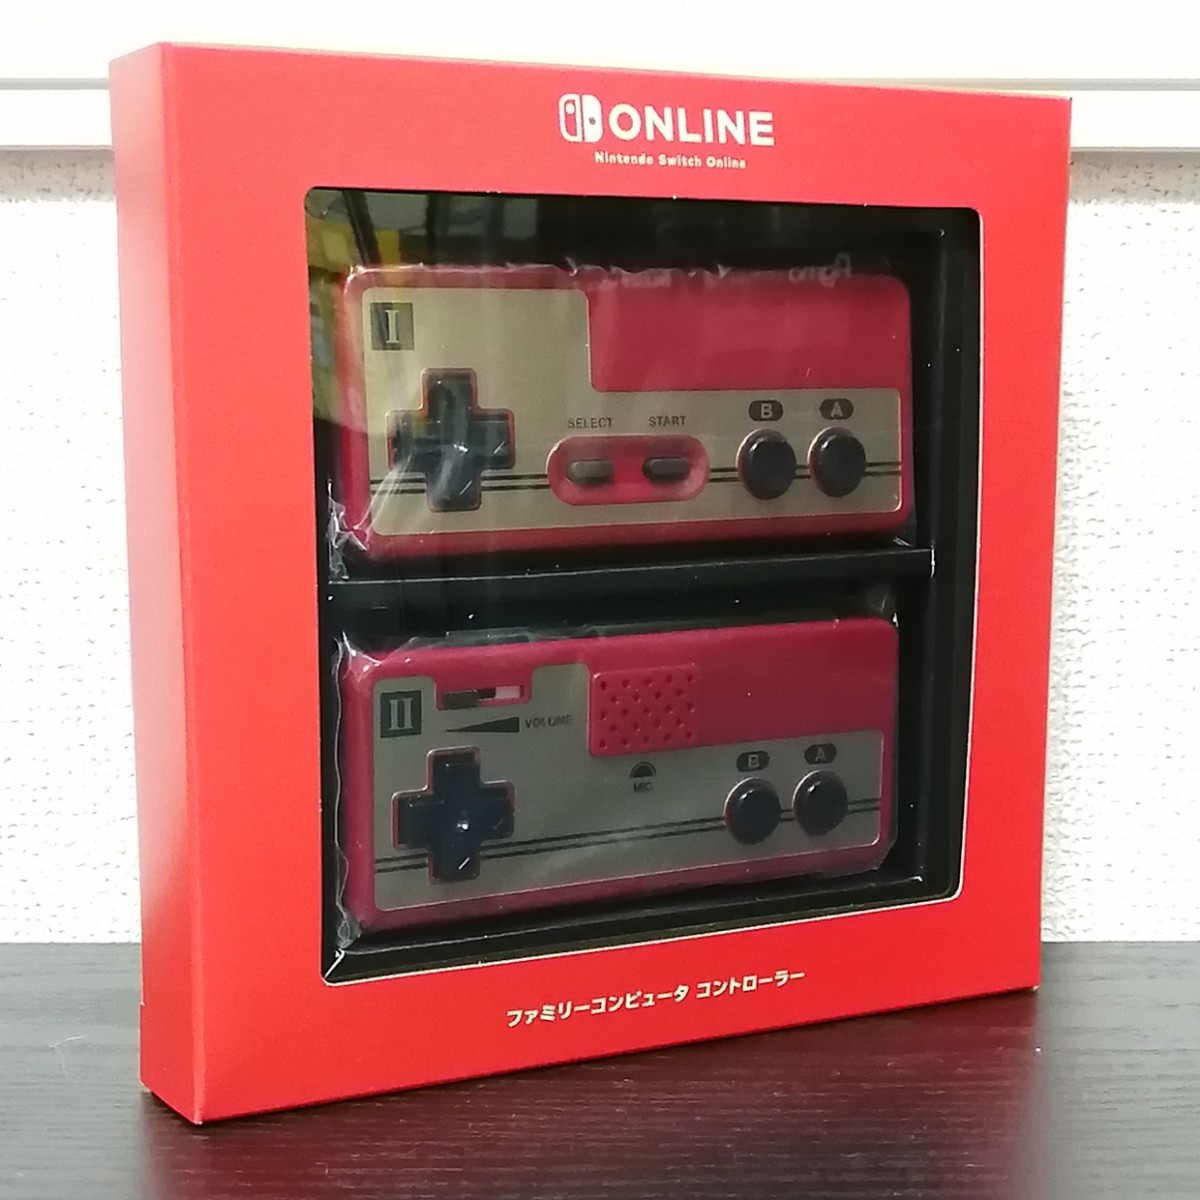 《新品未開封》マイニンテンドーストア ニンテンドースイッチ ファミリーコンピュータ Nintendo Switch Online ファミコン コントローラー